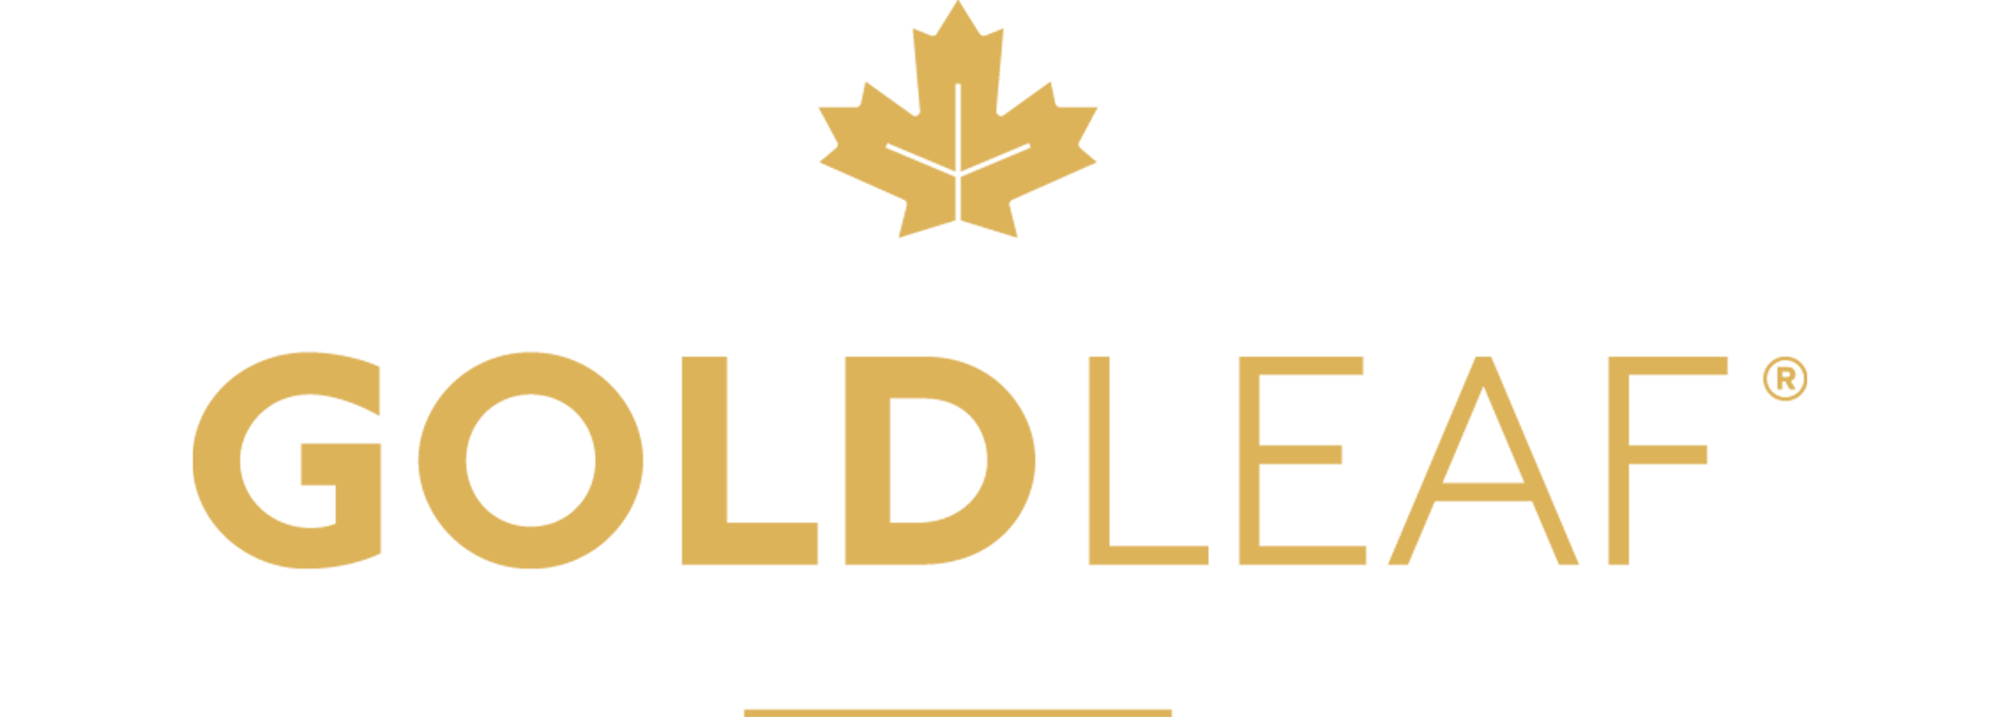 Gold Leaf Logo - GoldLeaf Service